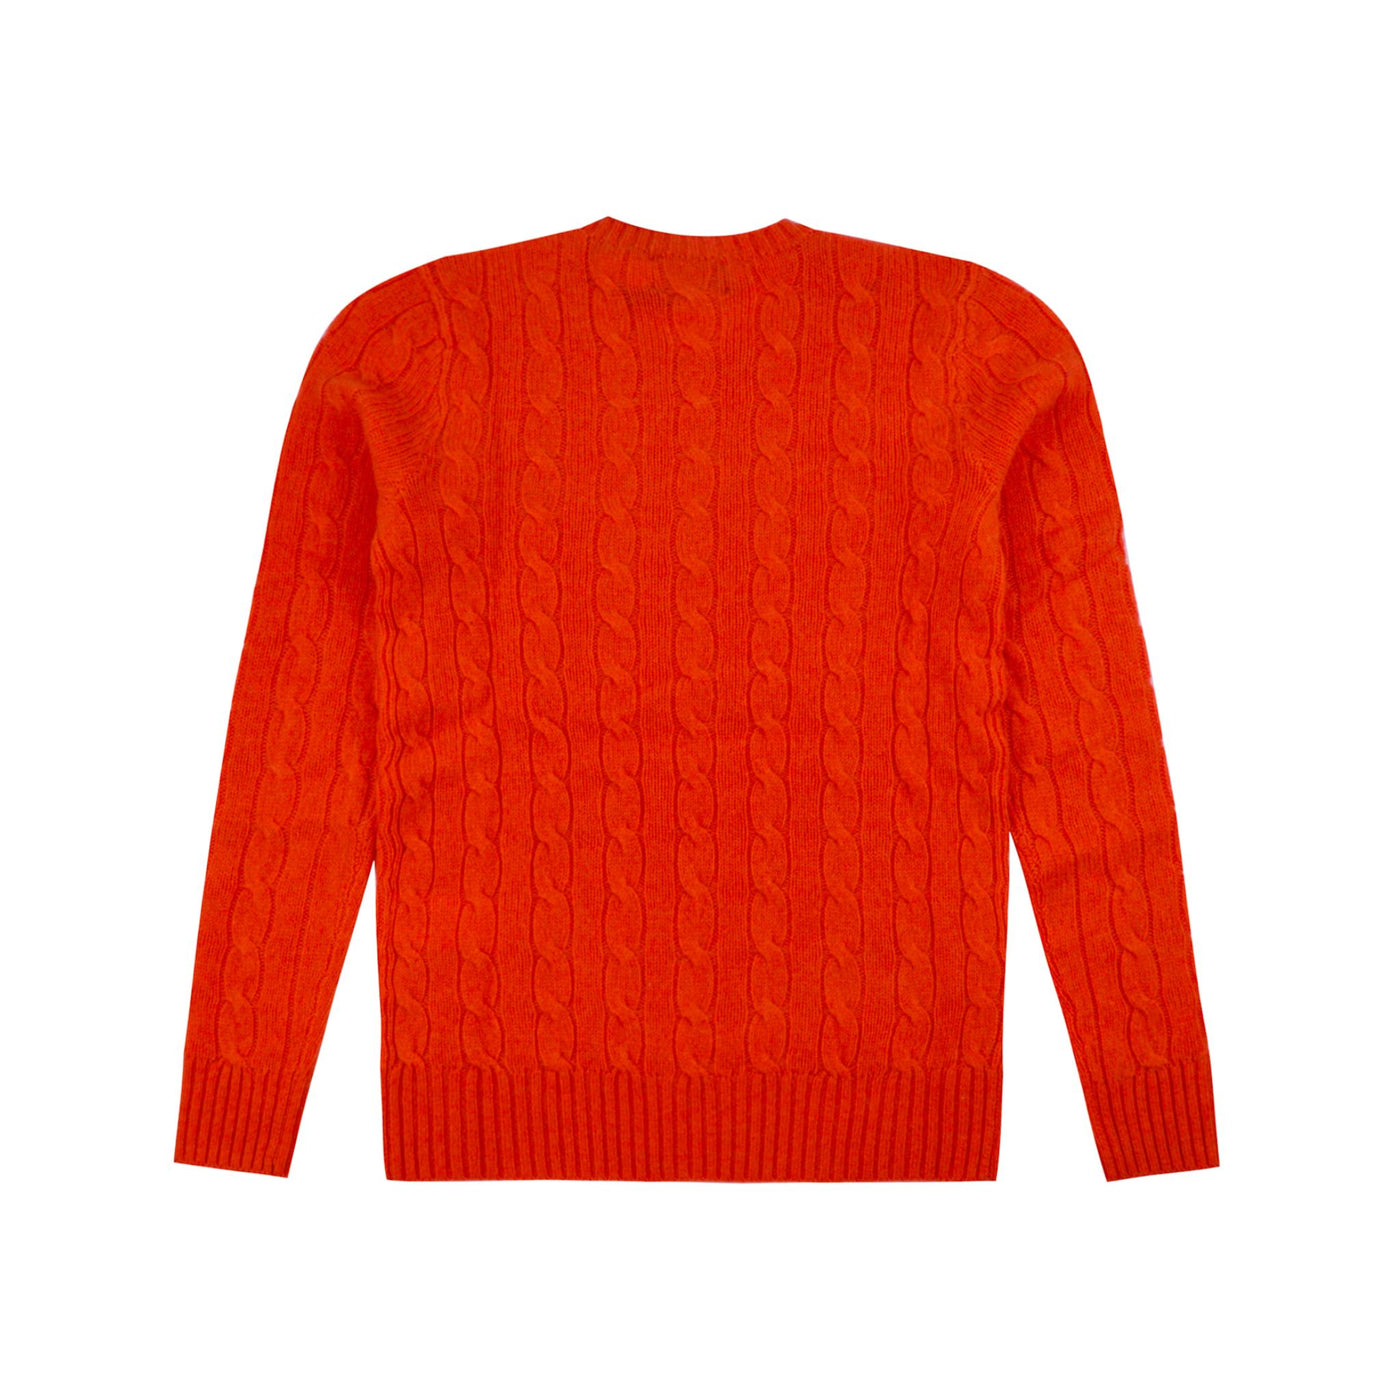 Maglia Donna in misto lana Arancione